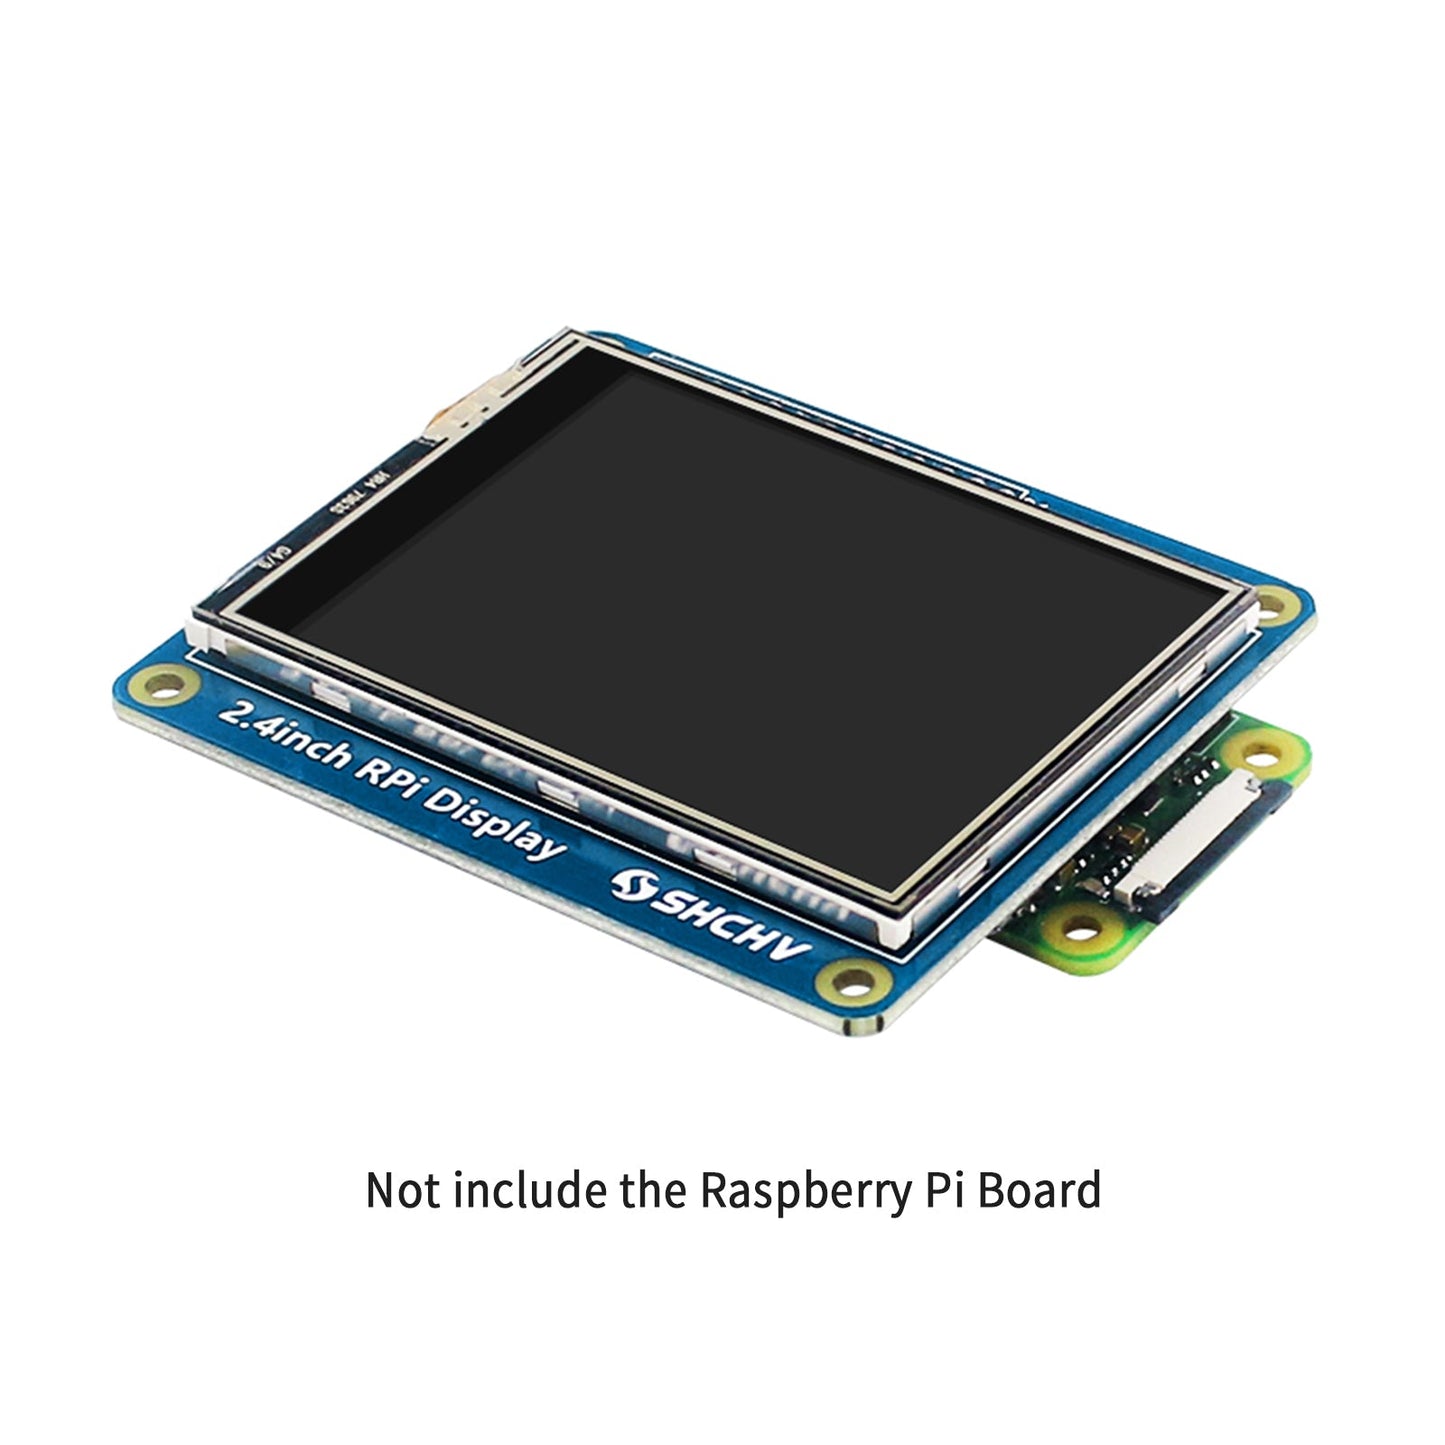 Écran LED 2,4 pouces 320*240 Pixels adapté pour Raspberry Pi 4B 3B + Zero 2W